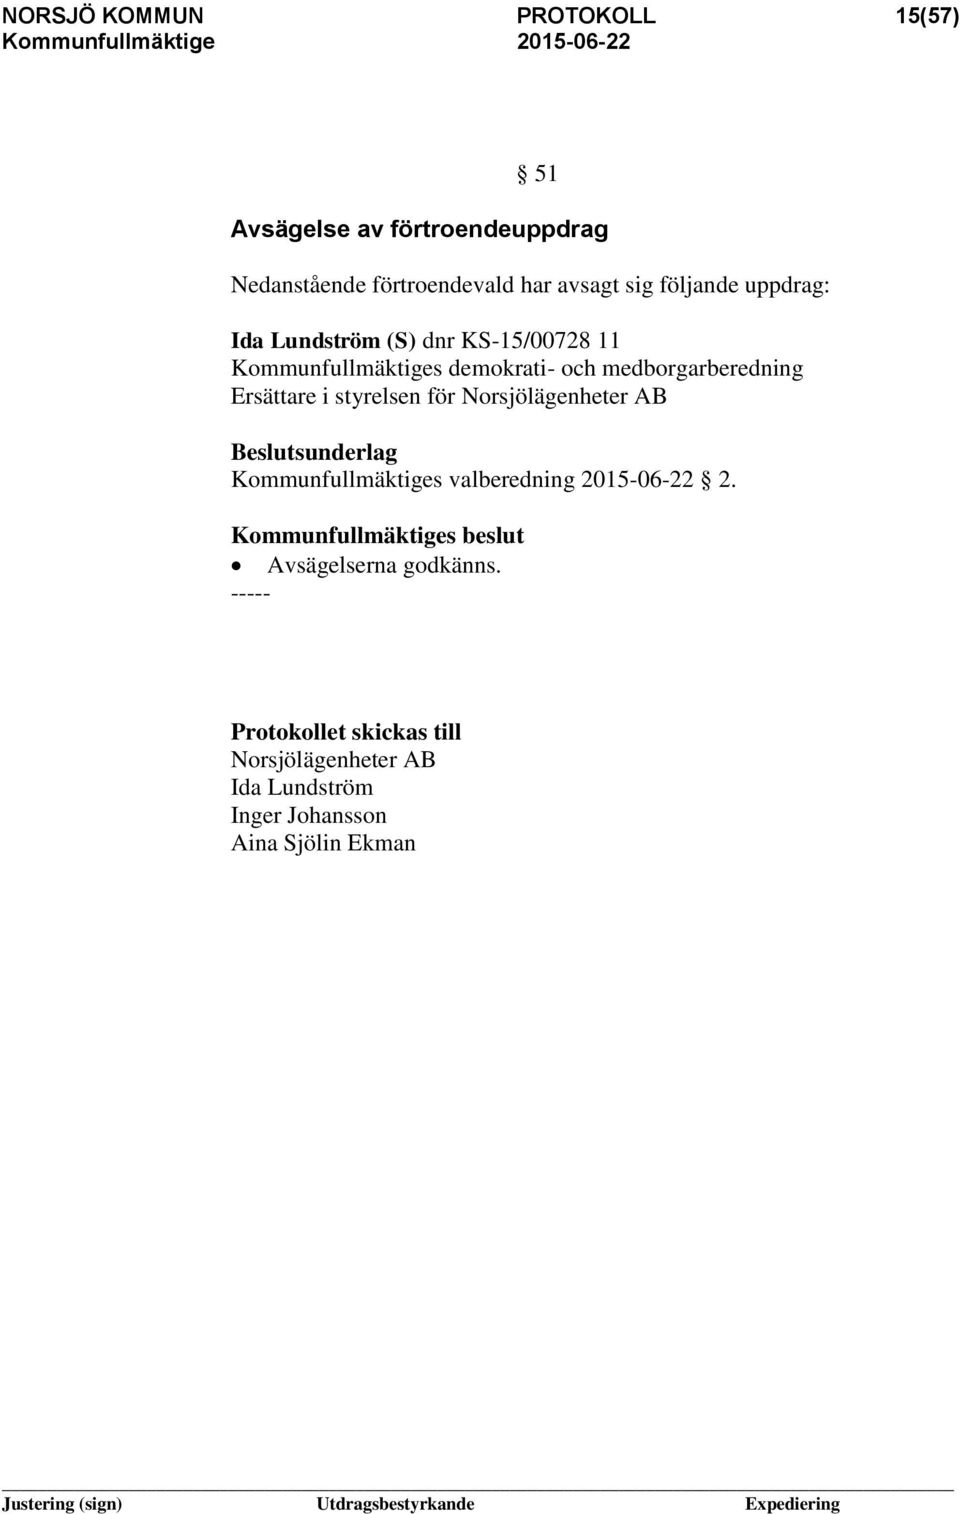 medborgarberedning Ersättare i styrelsen för Norsjölägenheter AB Kommunfullmäktiges valberedning